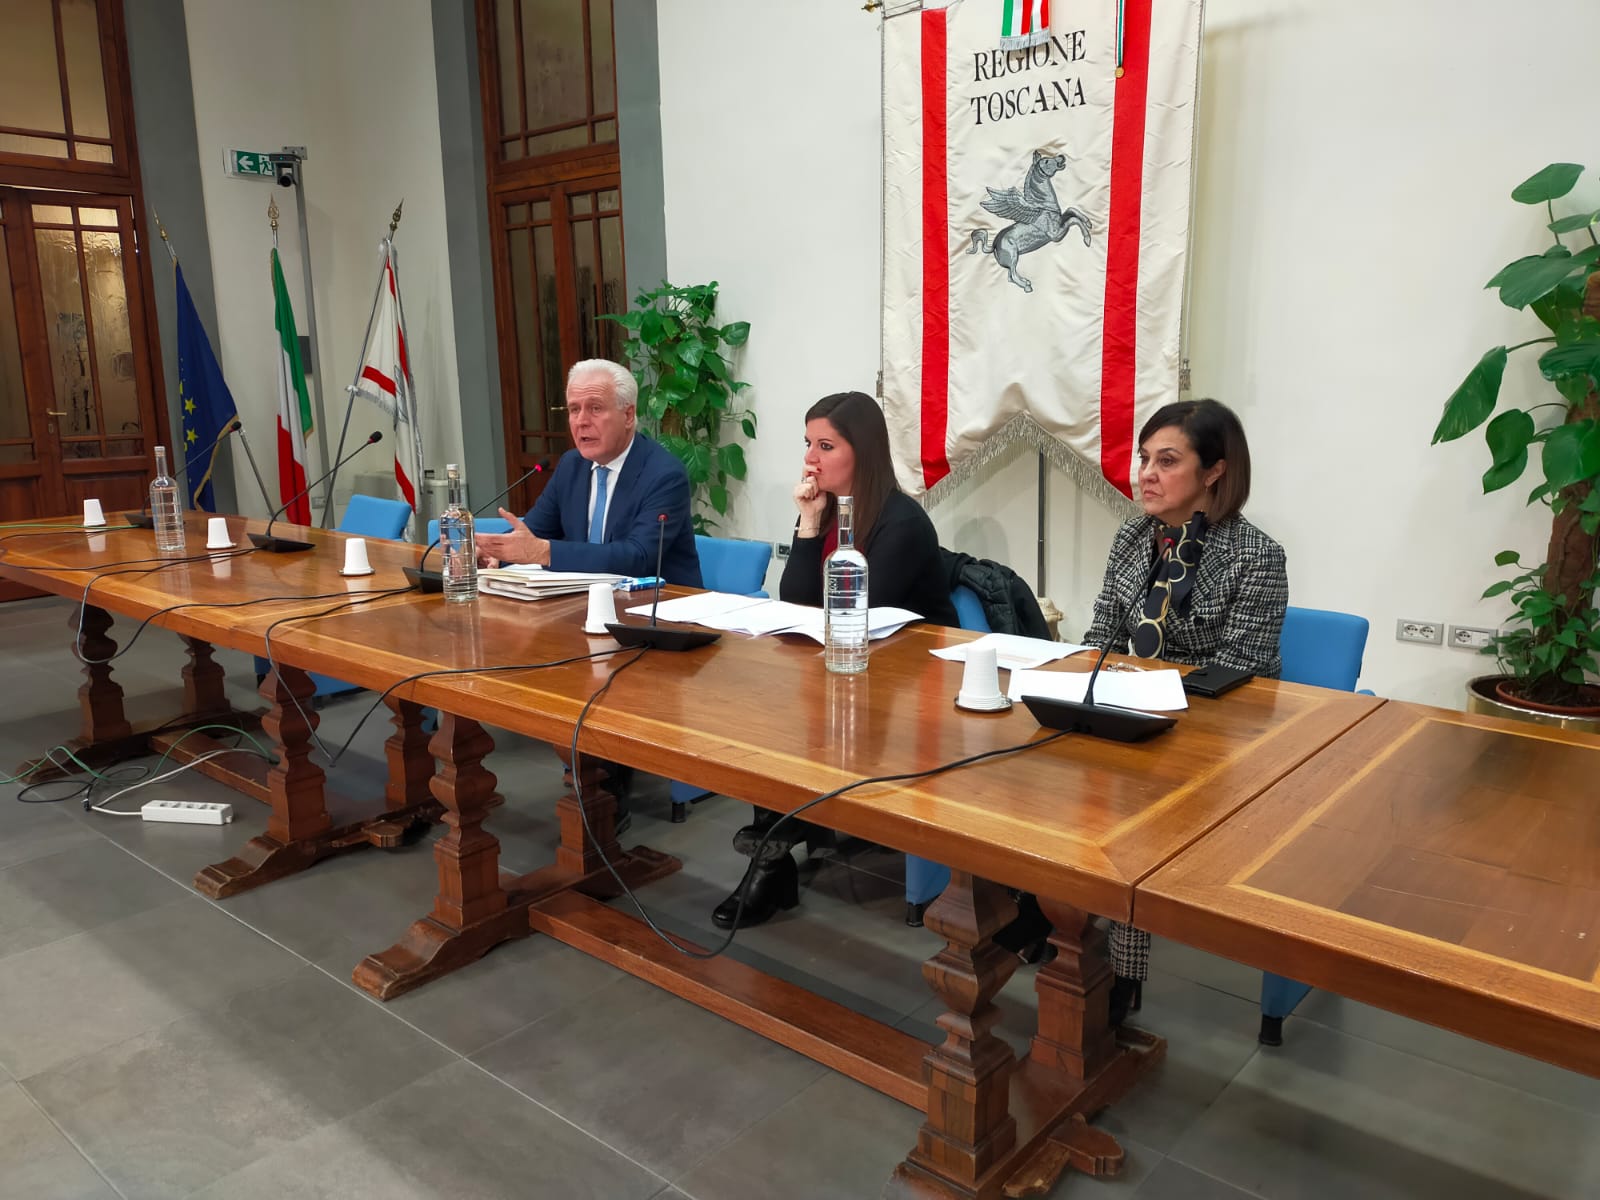 🎧 Tirocini in Toscana: tra le nuove linee guida, aumento del rimborso per i tirocinanti e più controlli